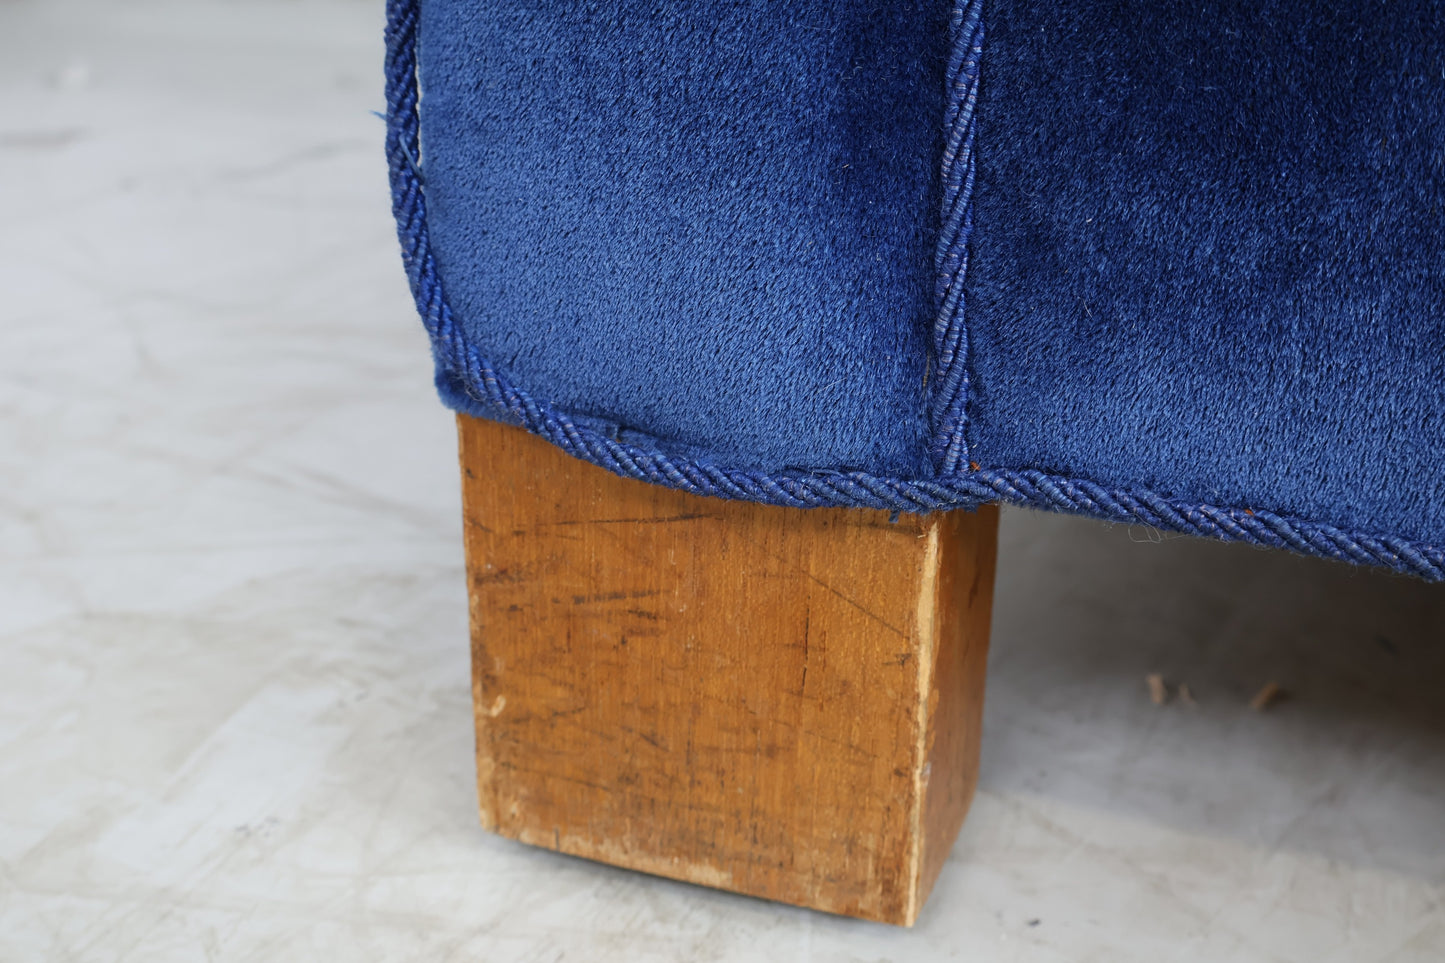 Nyrenset | Blå 3-seter sofa i velur